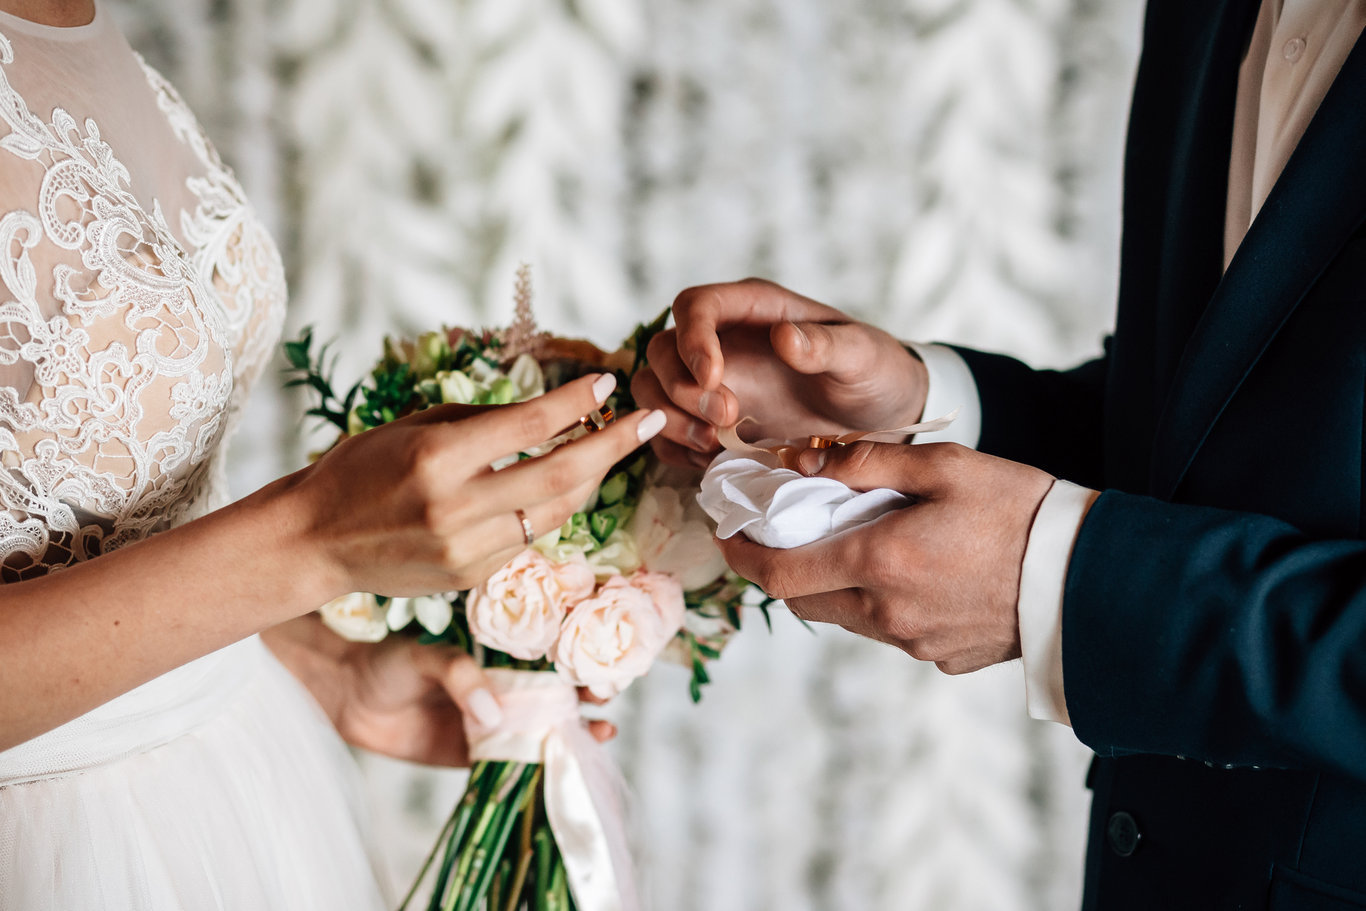 EVLİLİK KREDİSİ BAŞVURU ŞARTLARI 2023 | Yeni evleneceklere 150 bin TL faizsiz evlilik kredisi başvuru nasıl, nereden yapılır ve kimler başvurabilir ve kaç vade?